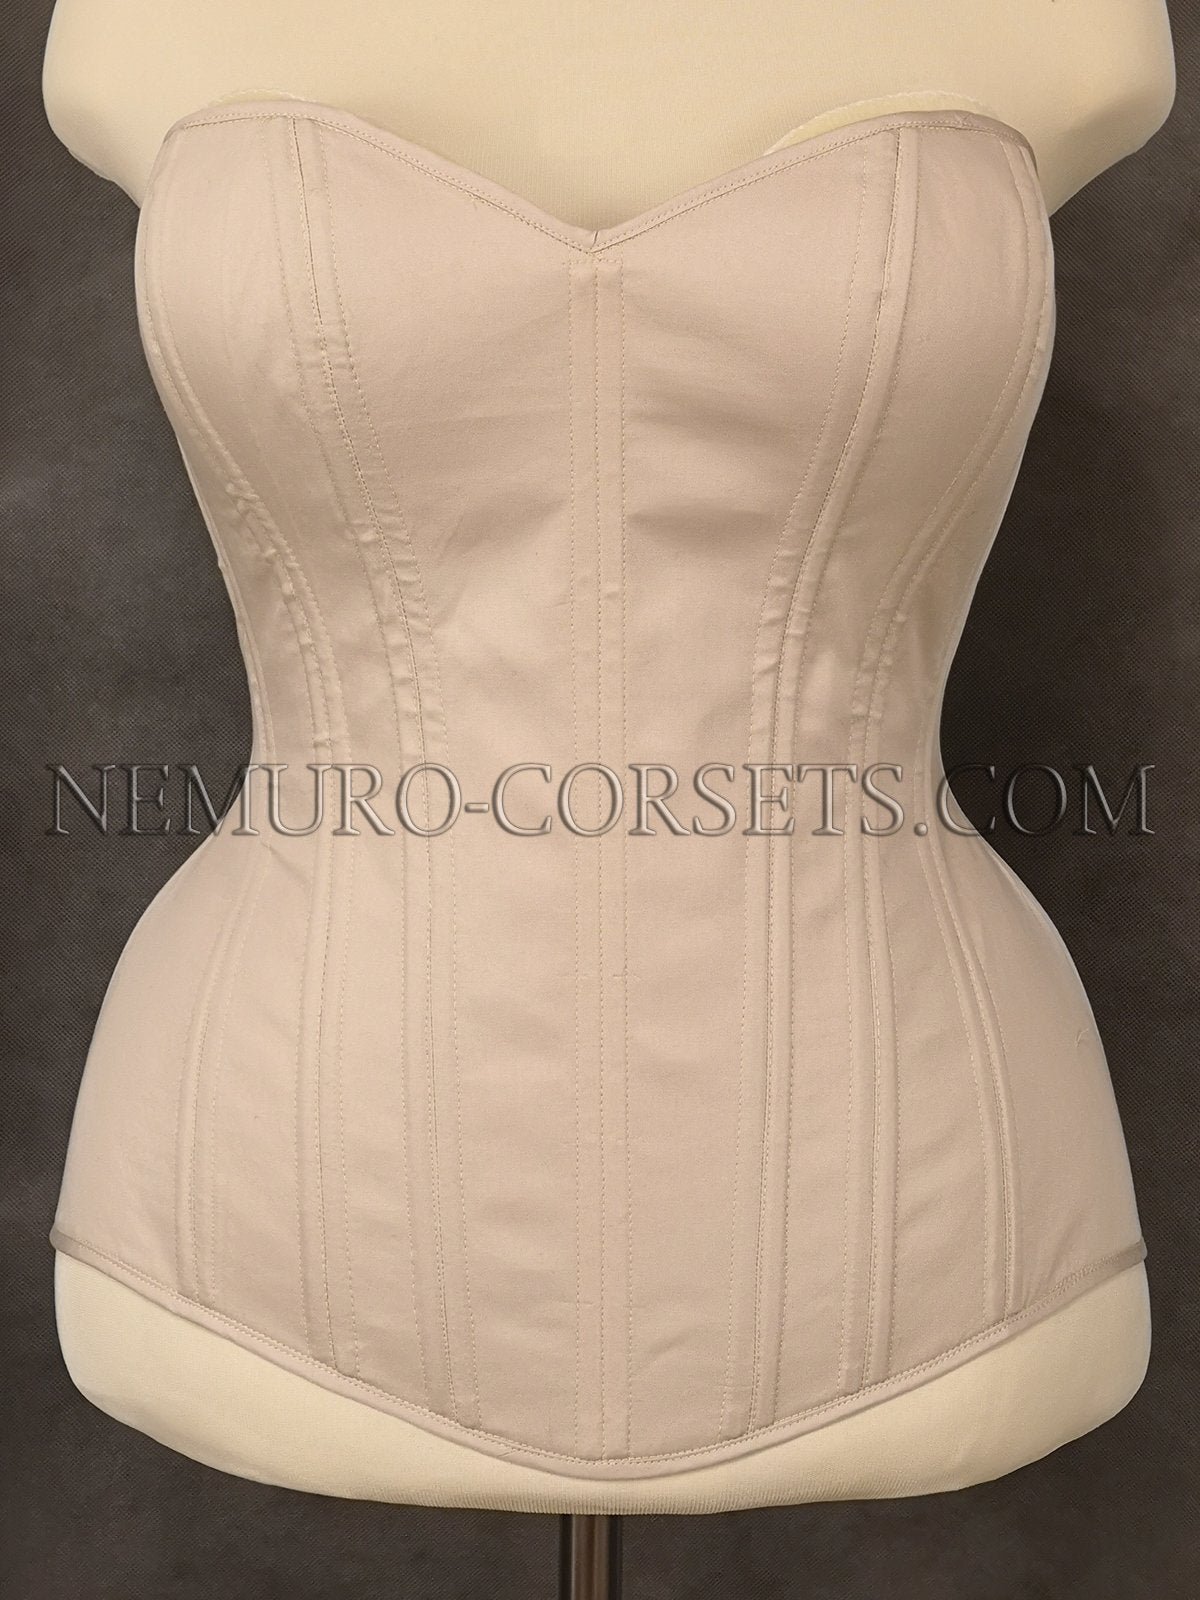 https://nemuro-corsets.com/cdn/shop/products/IMG_20200117_072815-2_1024x1024@2x.jpg?v=1610511450